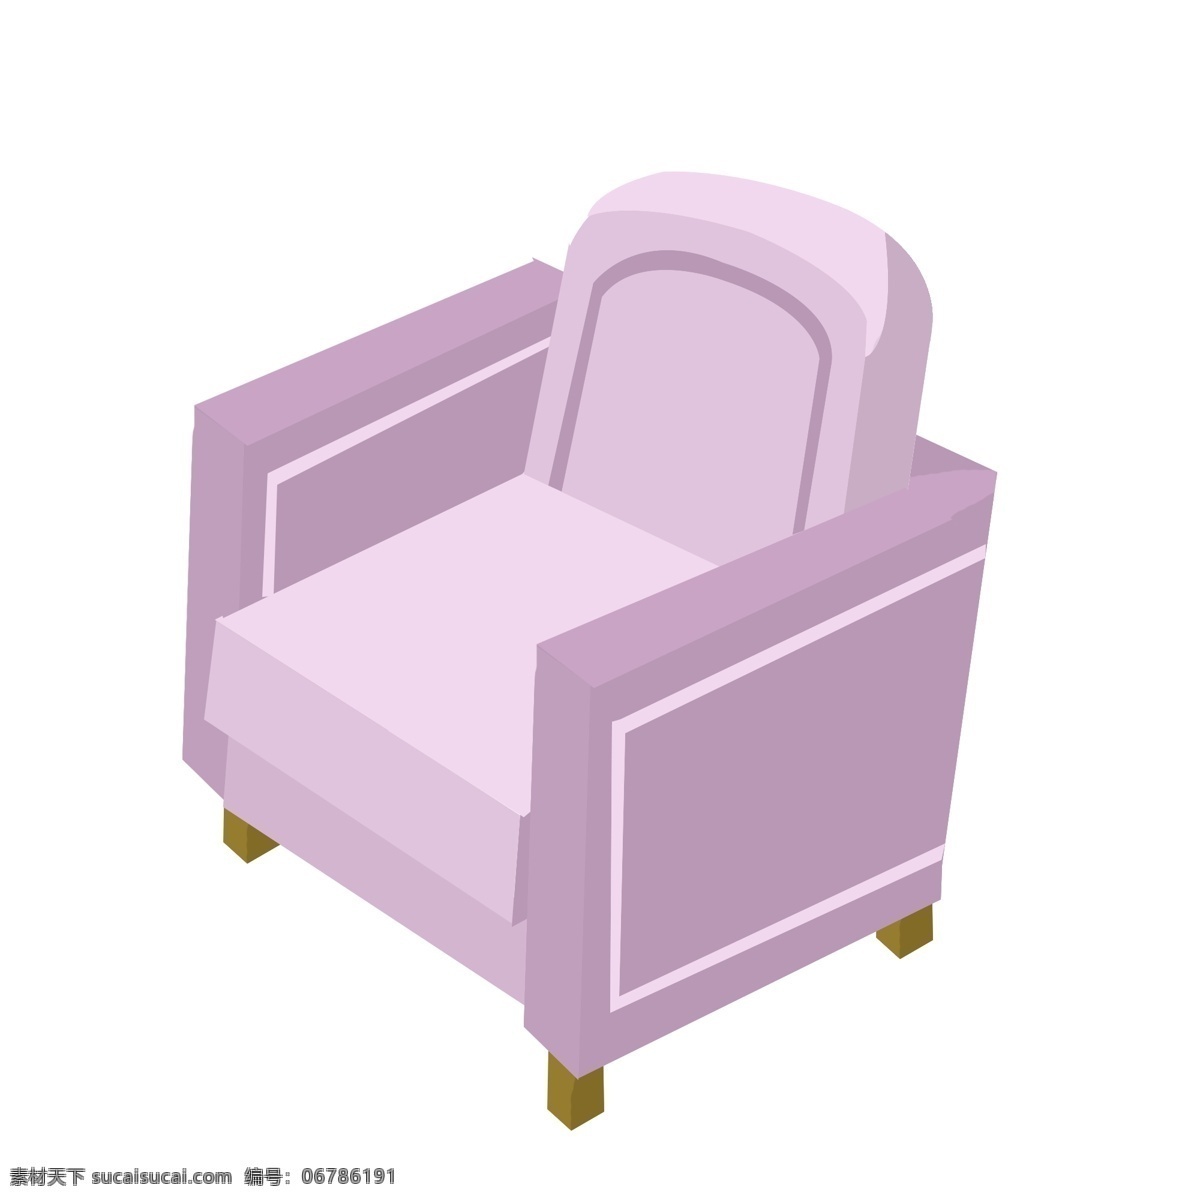 d 紫色 沙发 插画 紫色单人沙发 手绘 漂亮 单人 单人沙发